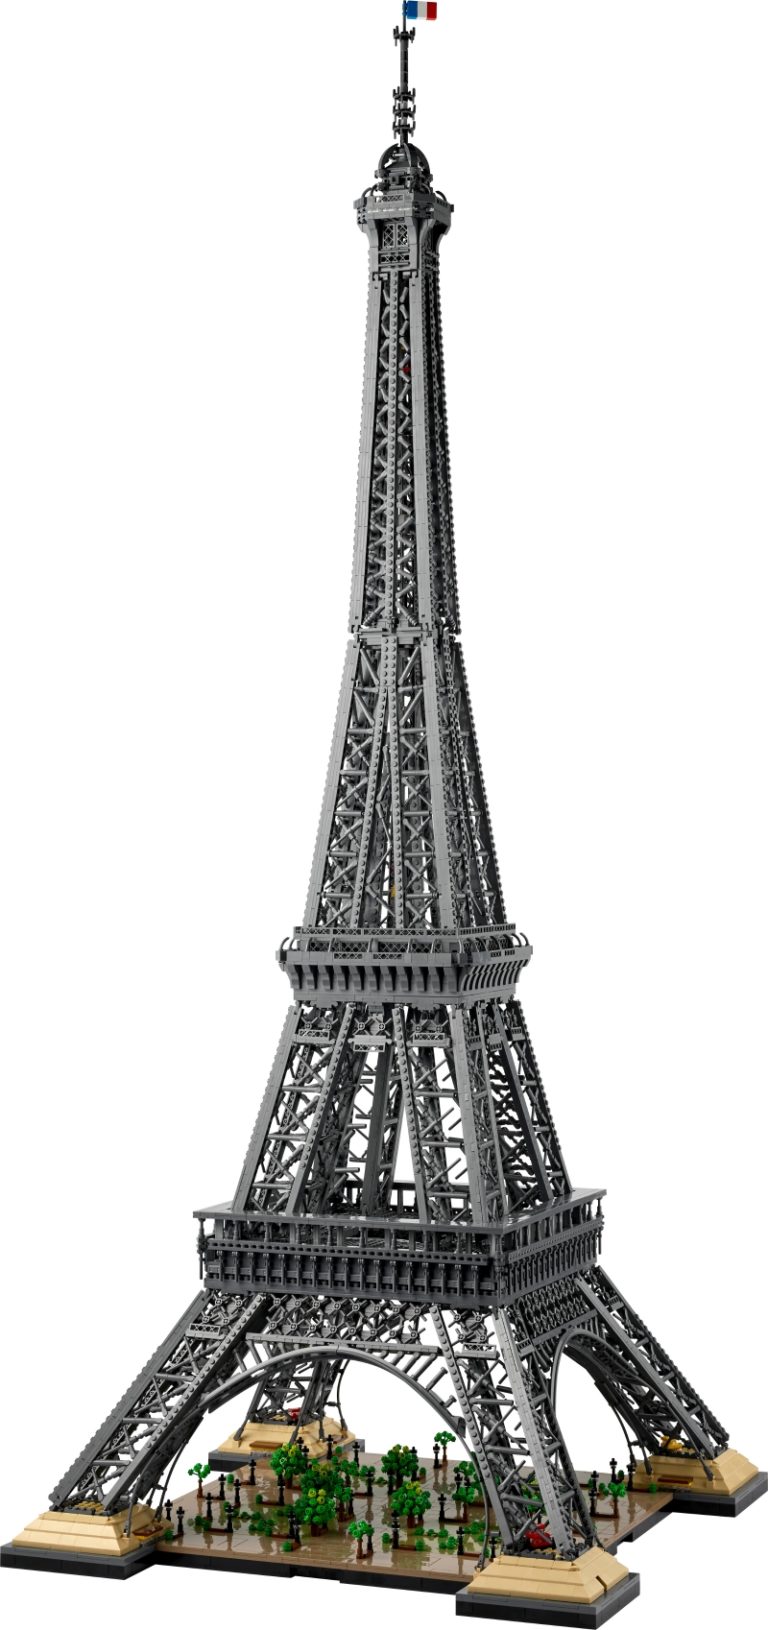 Lire la suite à propos de l’article Record de hauteur pour cette Tour Eiffel !